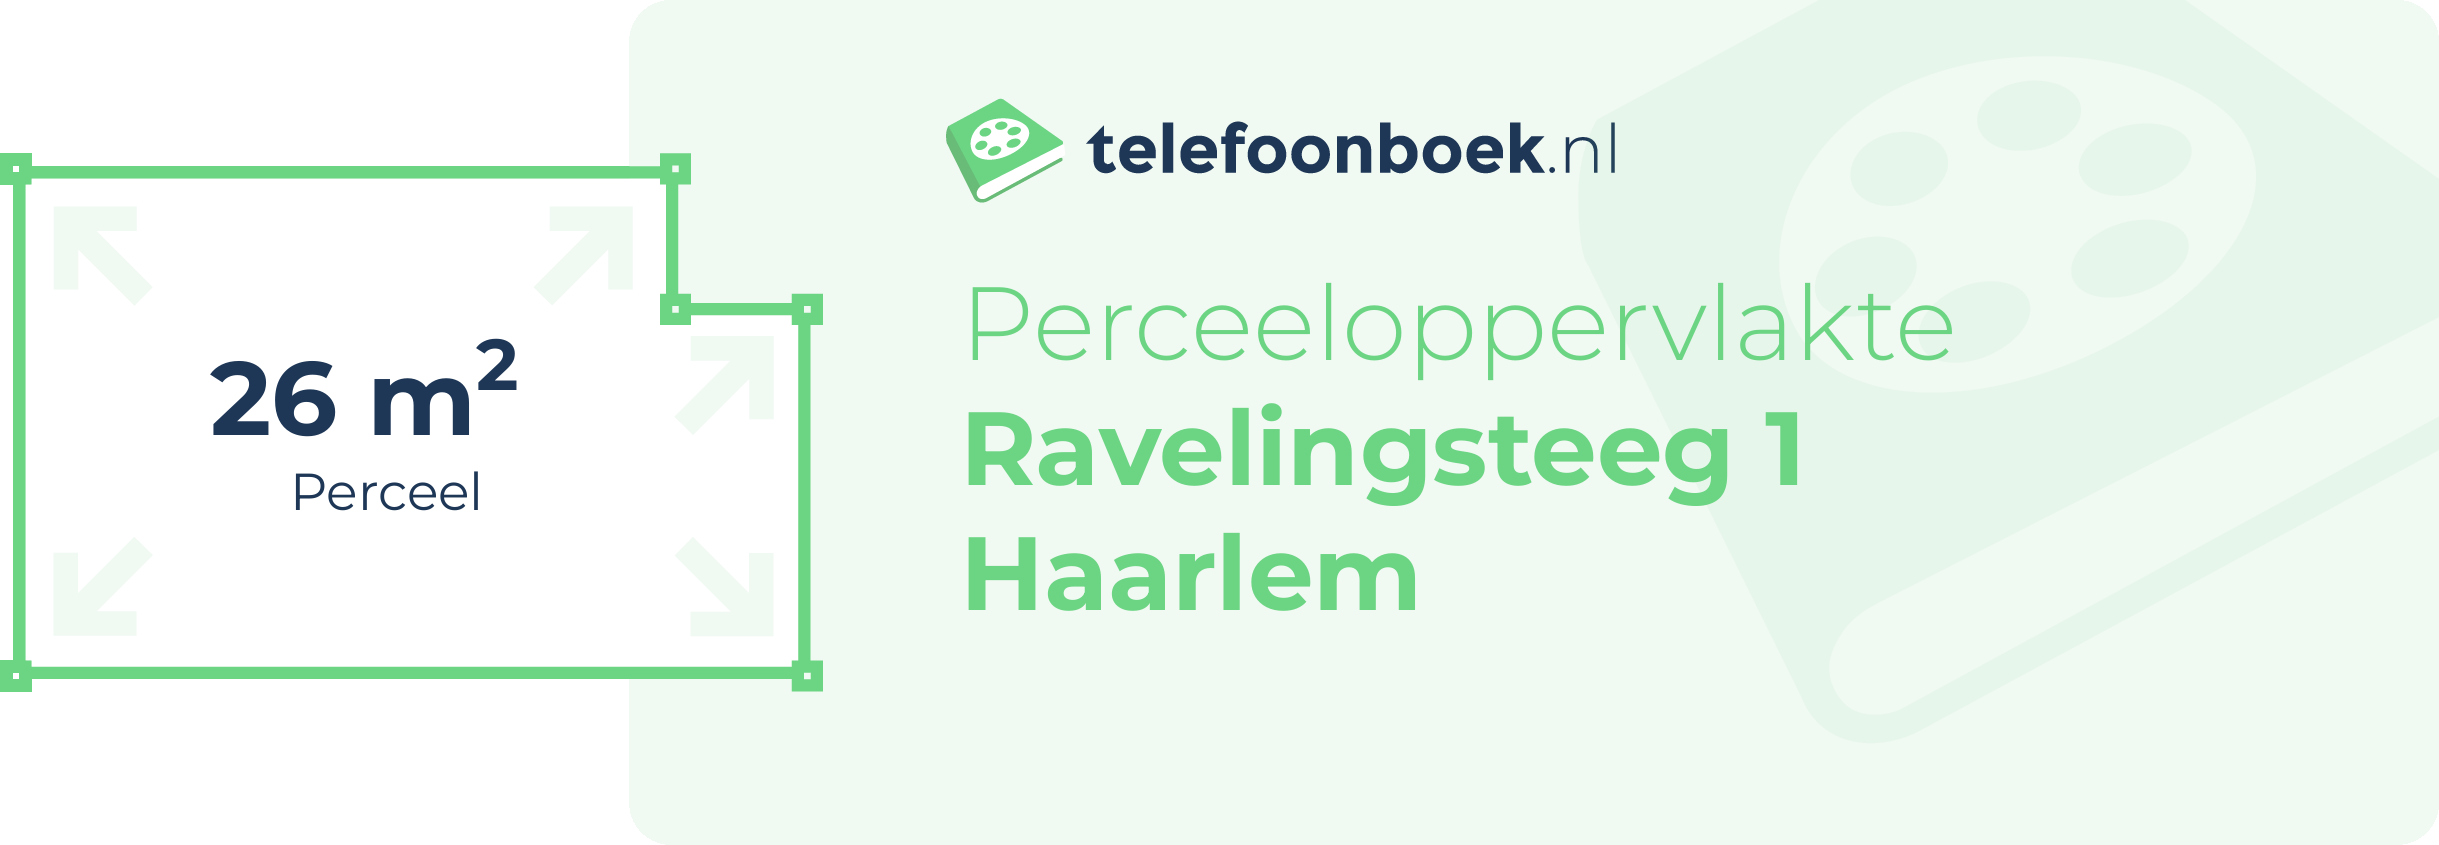 Perceeloppervlakte Ravelingsteeg 1 Haarlem